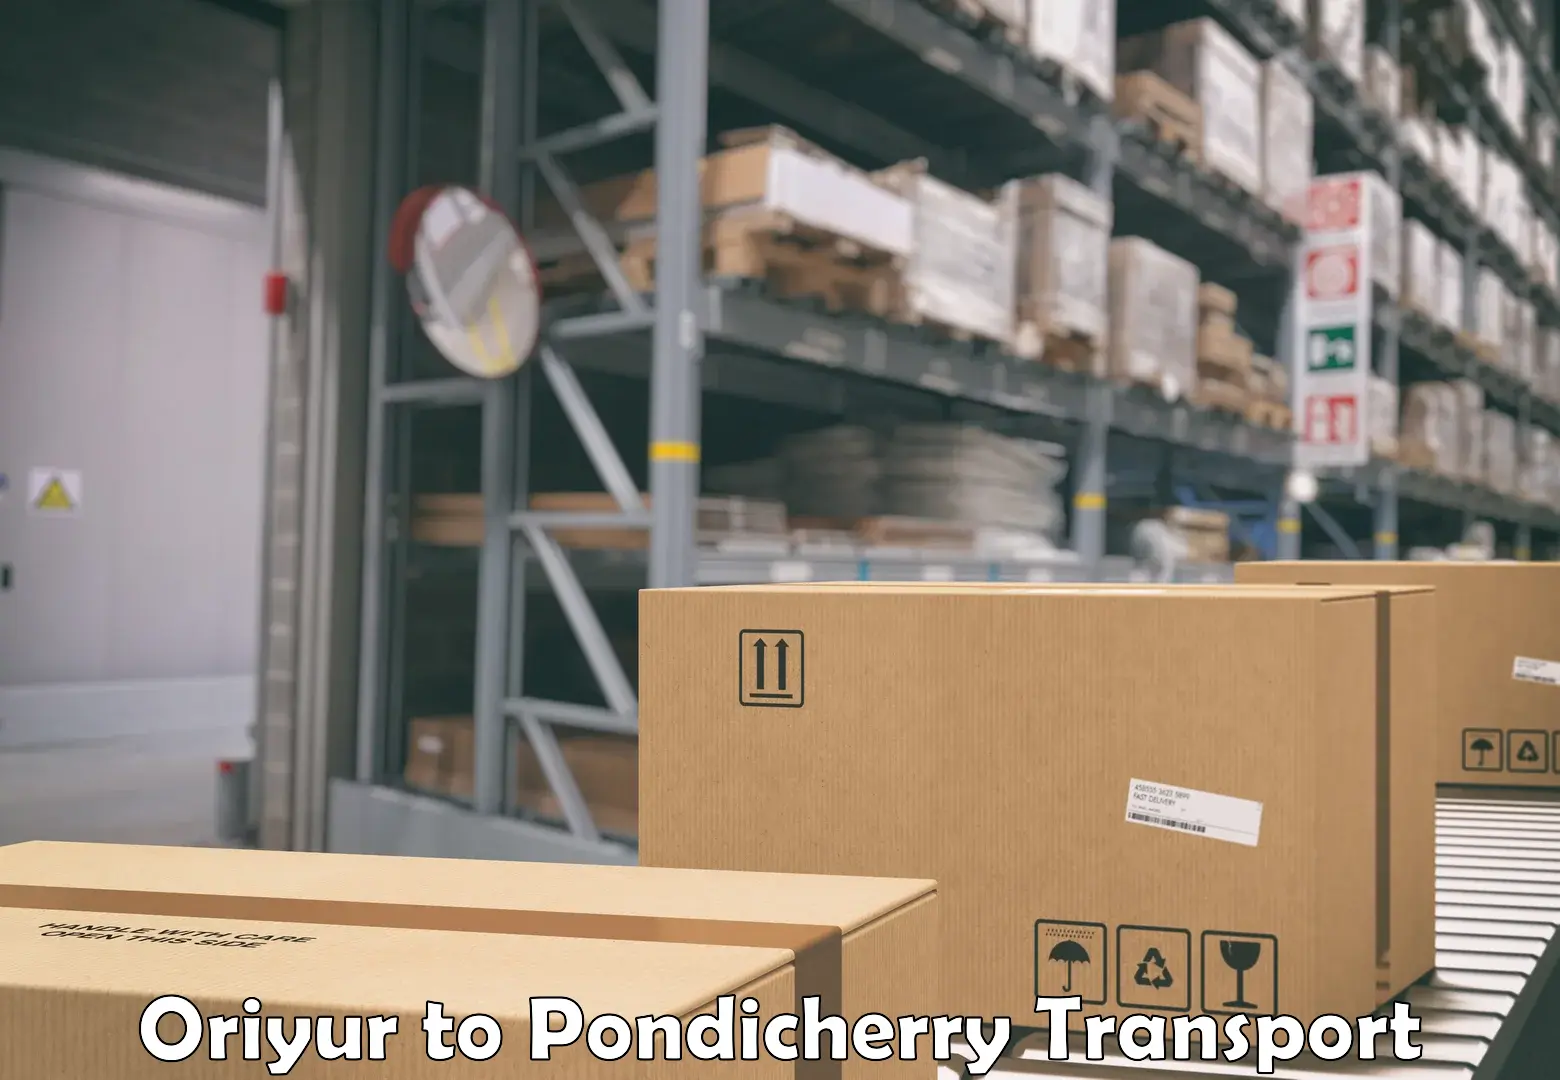 Daily parcel service transport Oriyur to Pondicherry